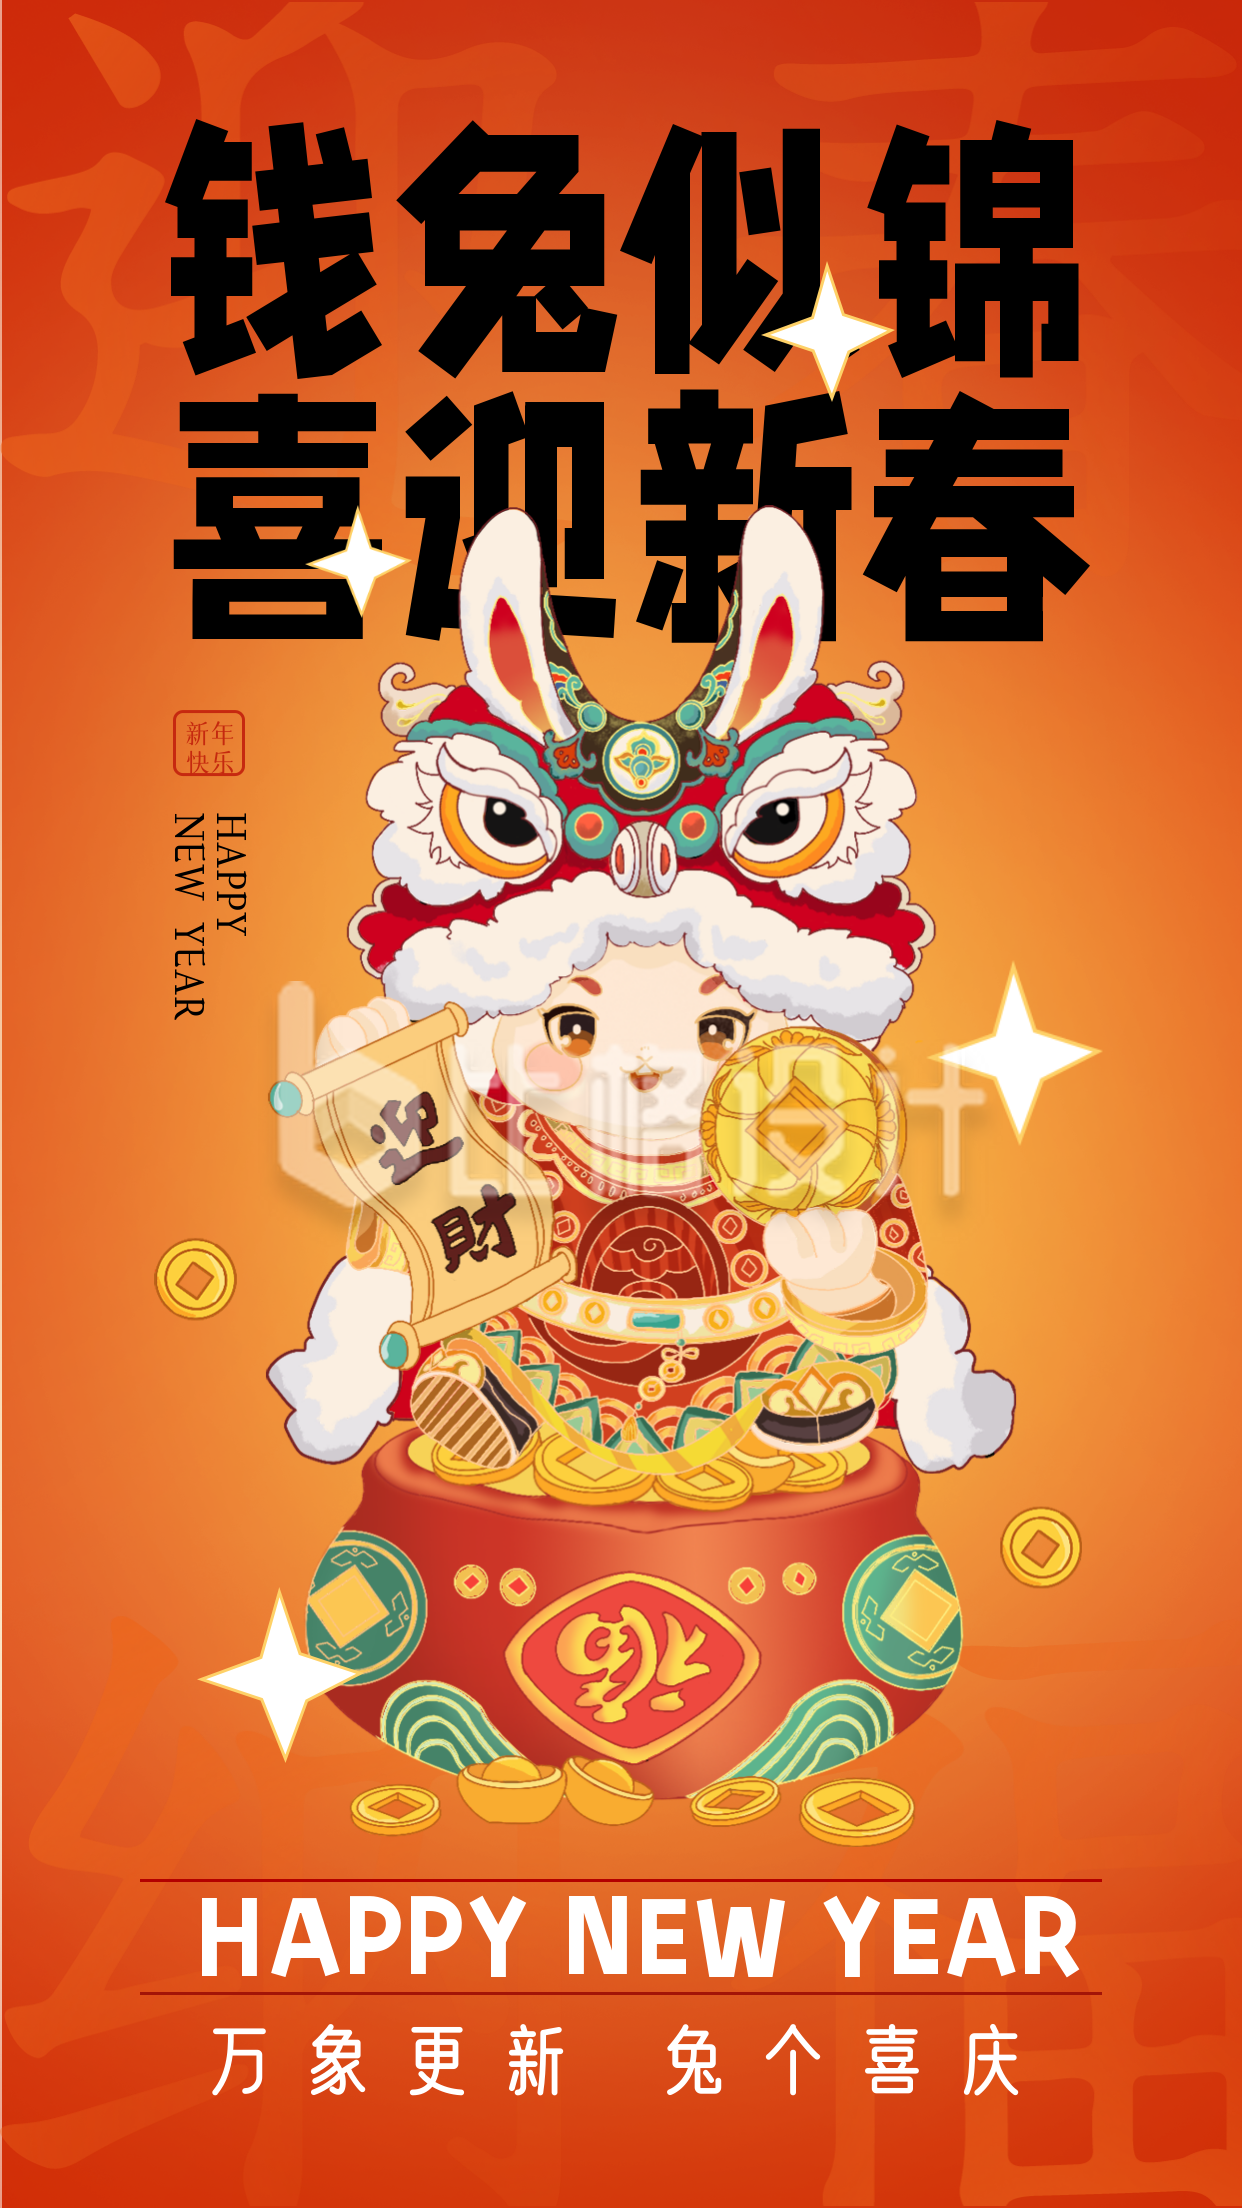 橙色手绘新年祝福语宣传手机海报